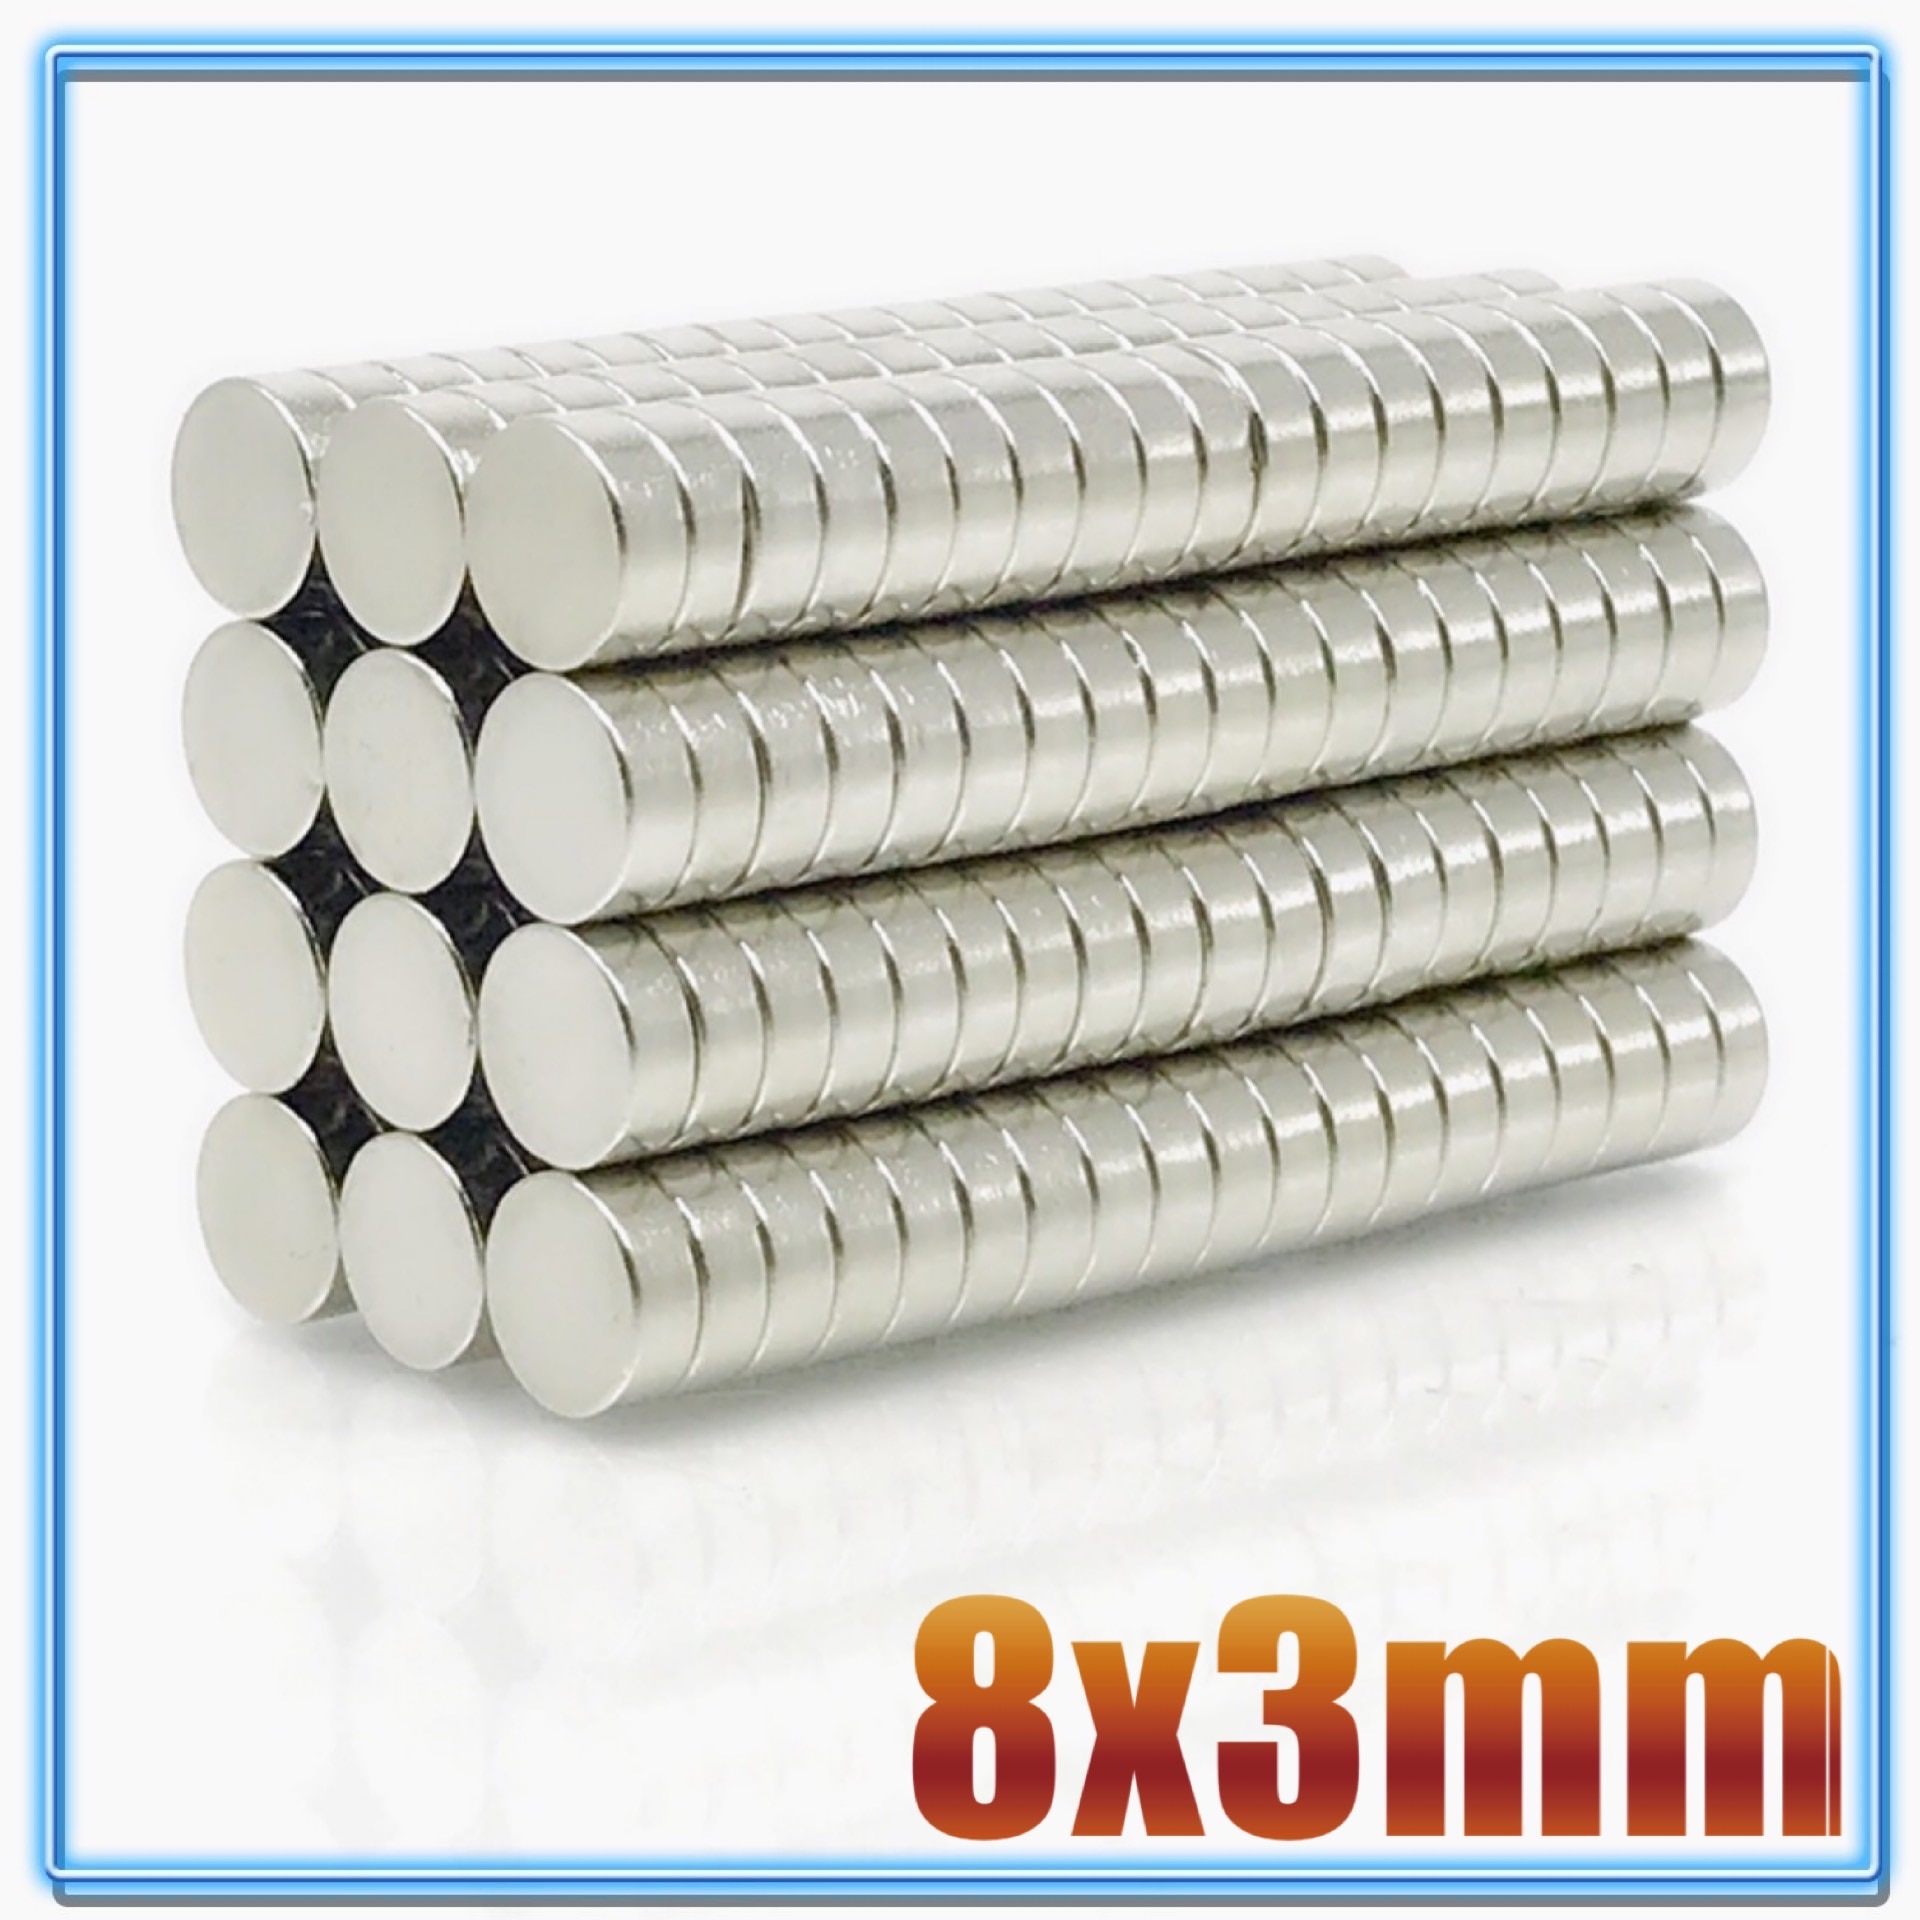 100 stk  n35 rund magnet 8 x 1 8 x 1.5 8 x 2 8 x 3 8 x 4 8 x 5 8 x 6 8 x 10 mm neodymmagnet permanent ndfeb superstærke kraftige magneter